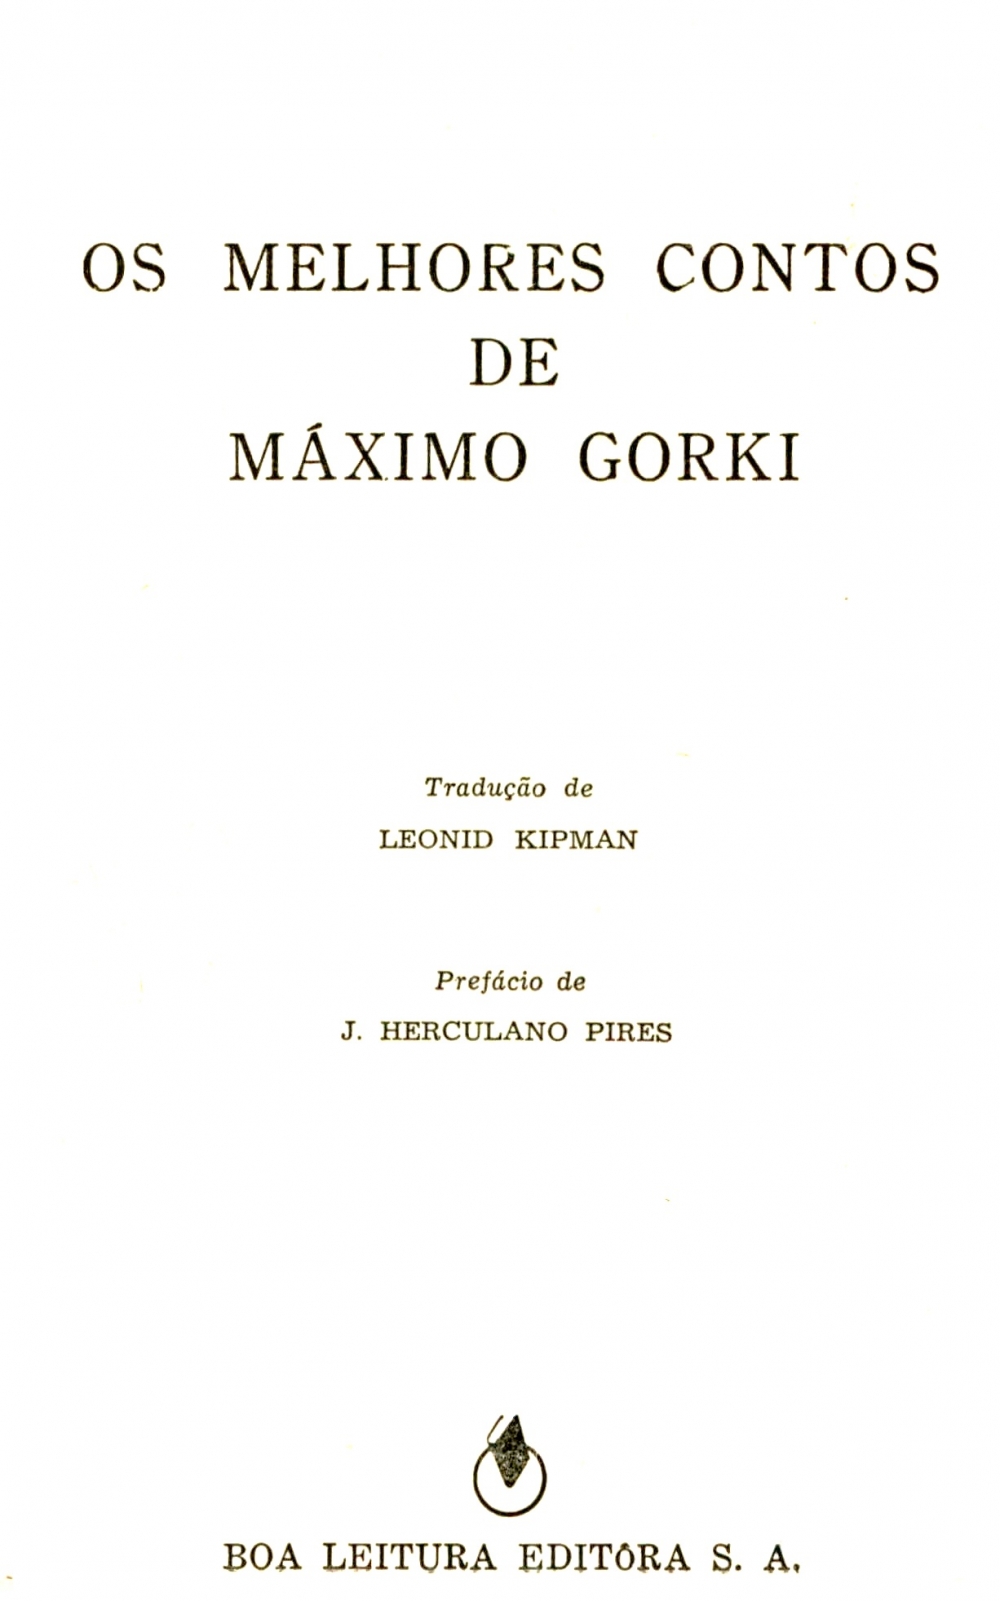 Os melhores contos de Máximo Gorki